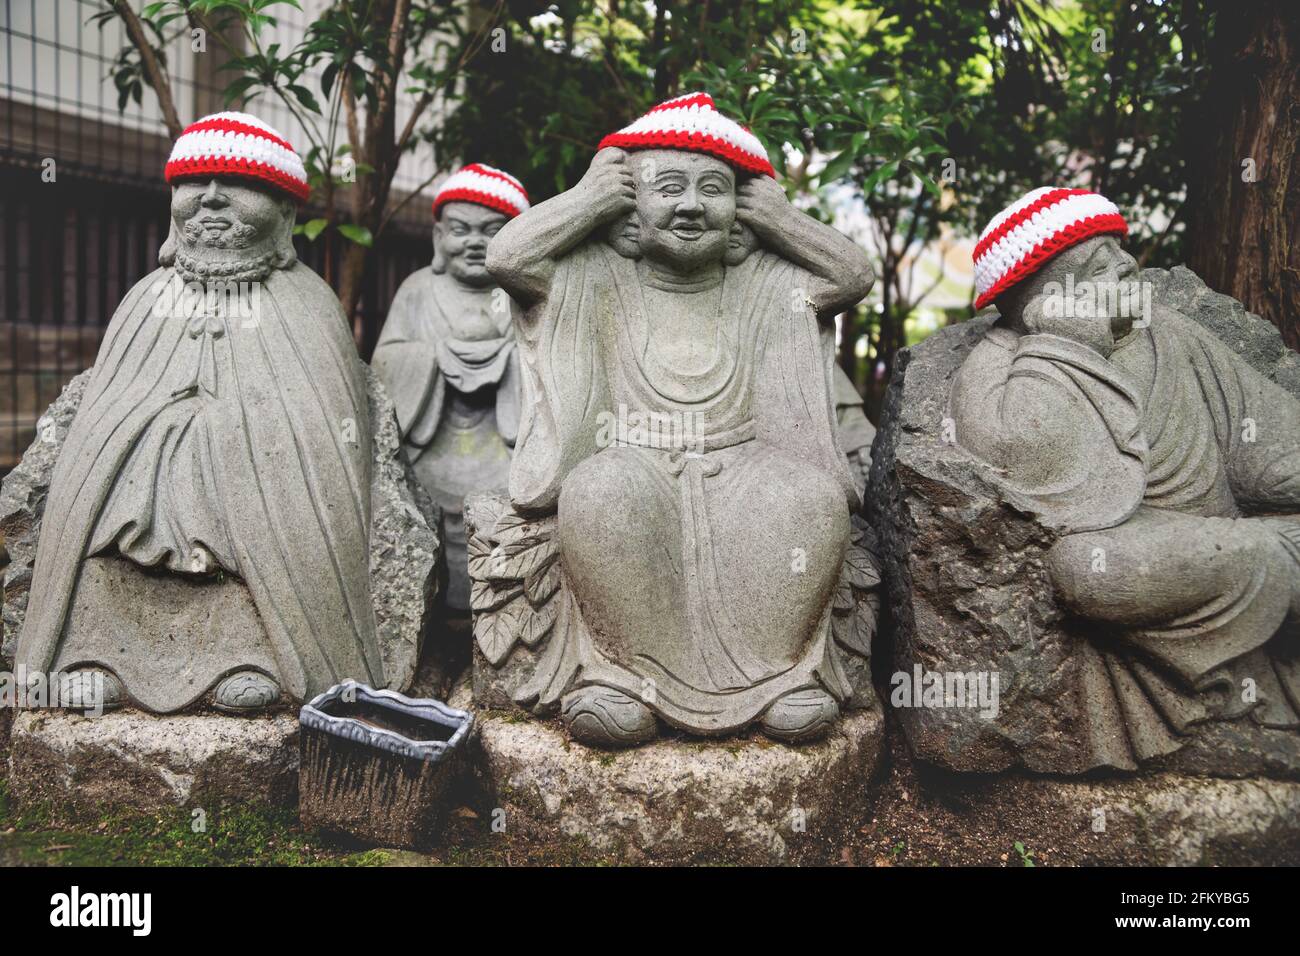 Particolare di statue di Buddha con offerte di cappelli a maglia che rappresentano I primi 500 discepoli dello storico Buddha Shakyamuni al tempio Diasho-in i Foto Stock